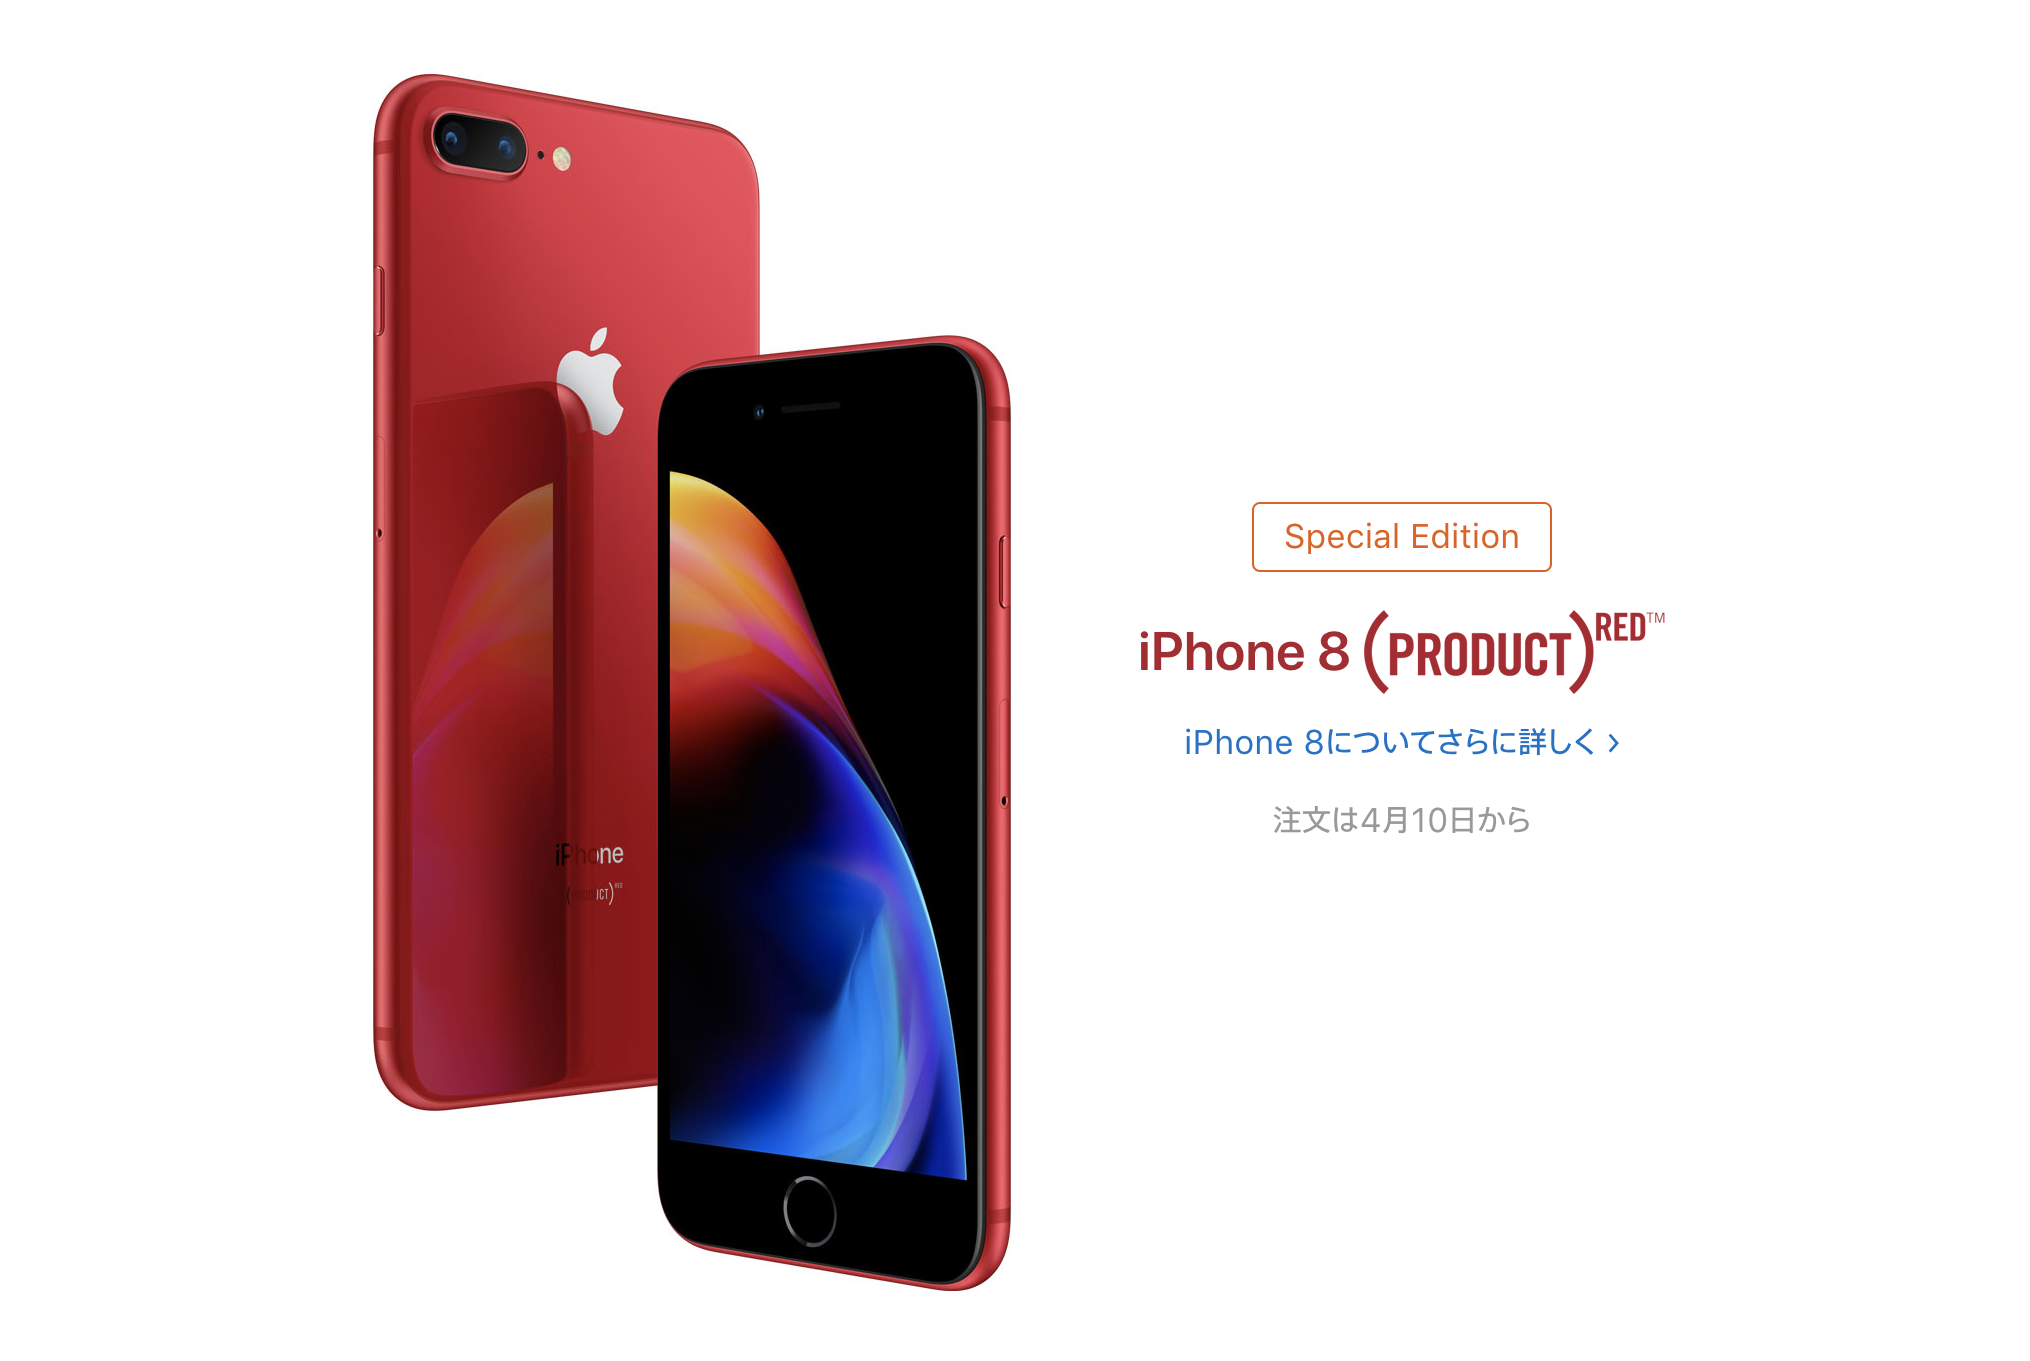 壁紙 Iphone 8 8 Plus の Product Red モデルの公式デザイン